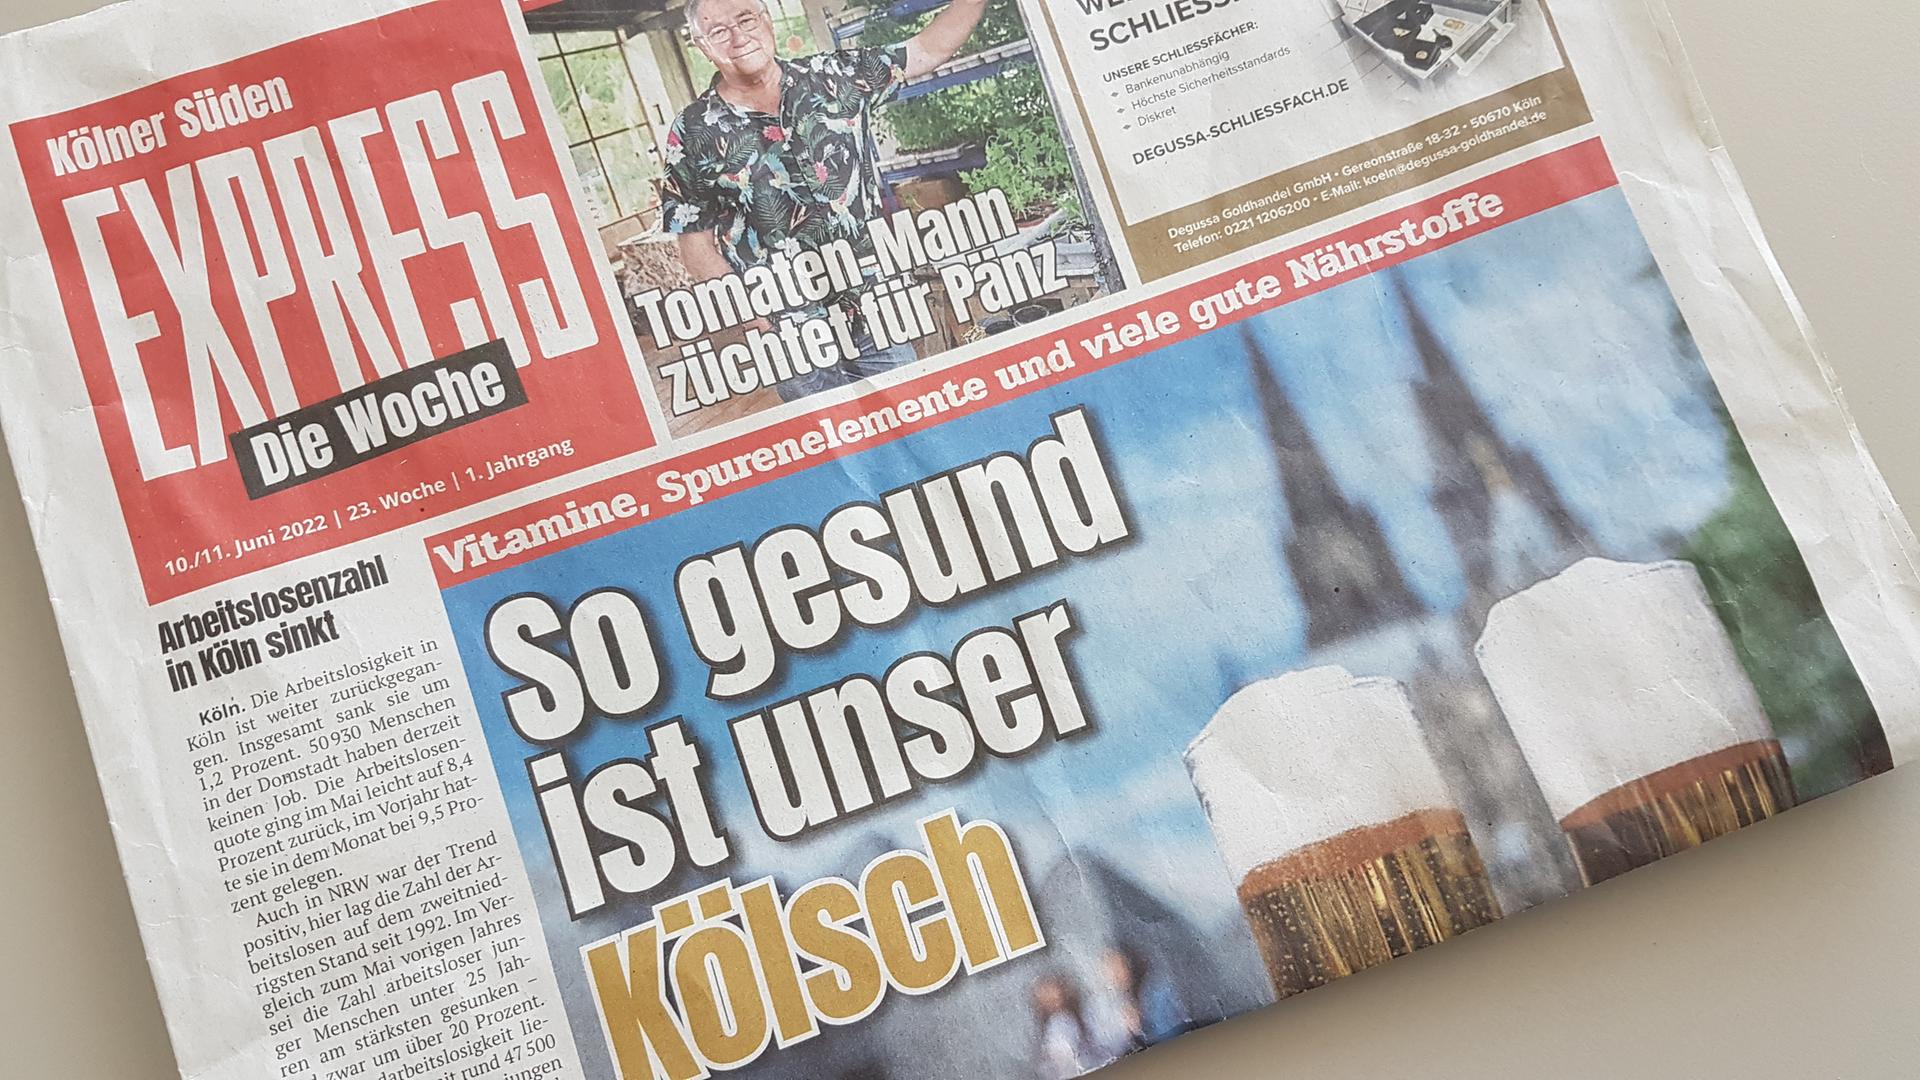 Die Titelseite des Kölner Anzeigenblatts "Express, die Woche" titelte "So gesund ist unser Kölsch".